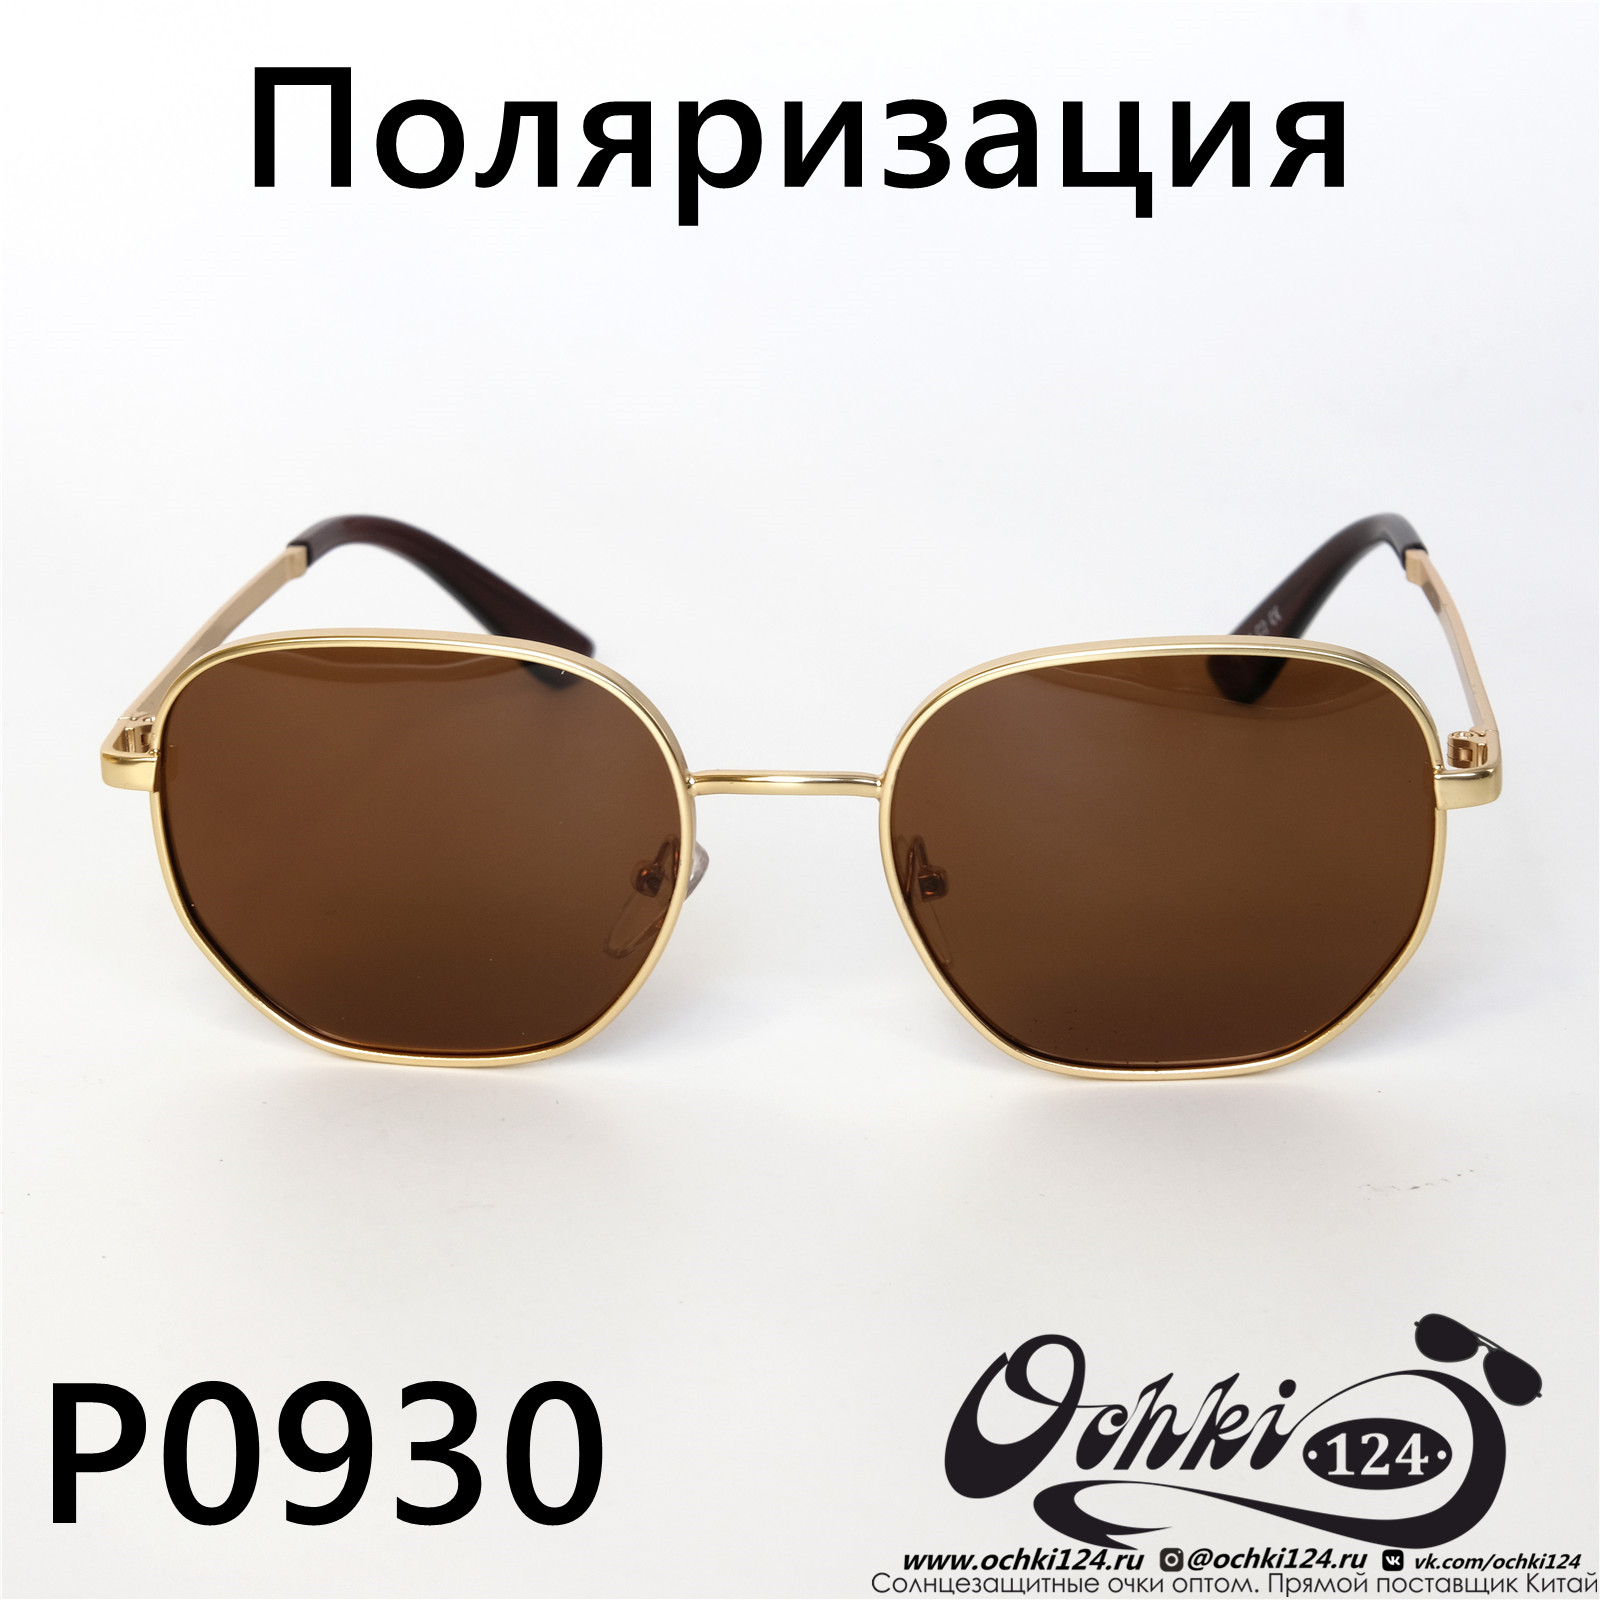  Солнцезащитные очки картинка 2022 Женские Поляризованные Квадратные  P0930-2 